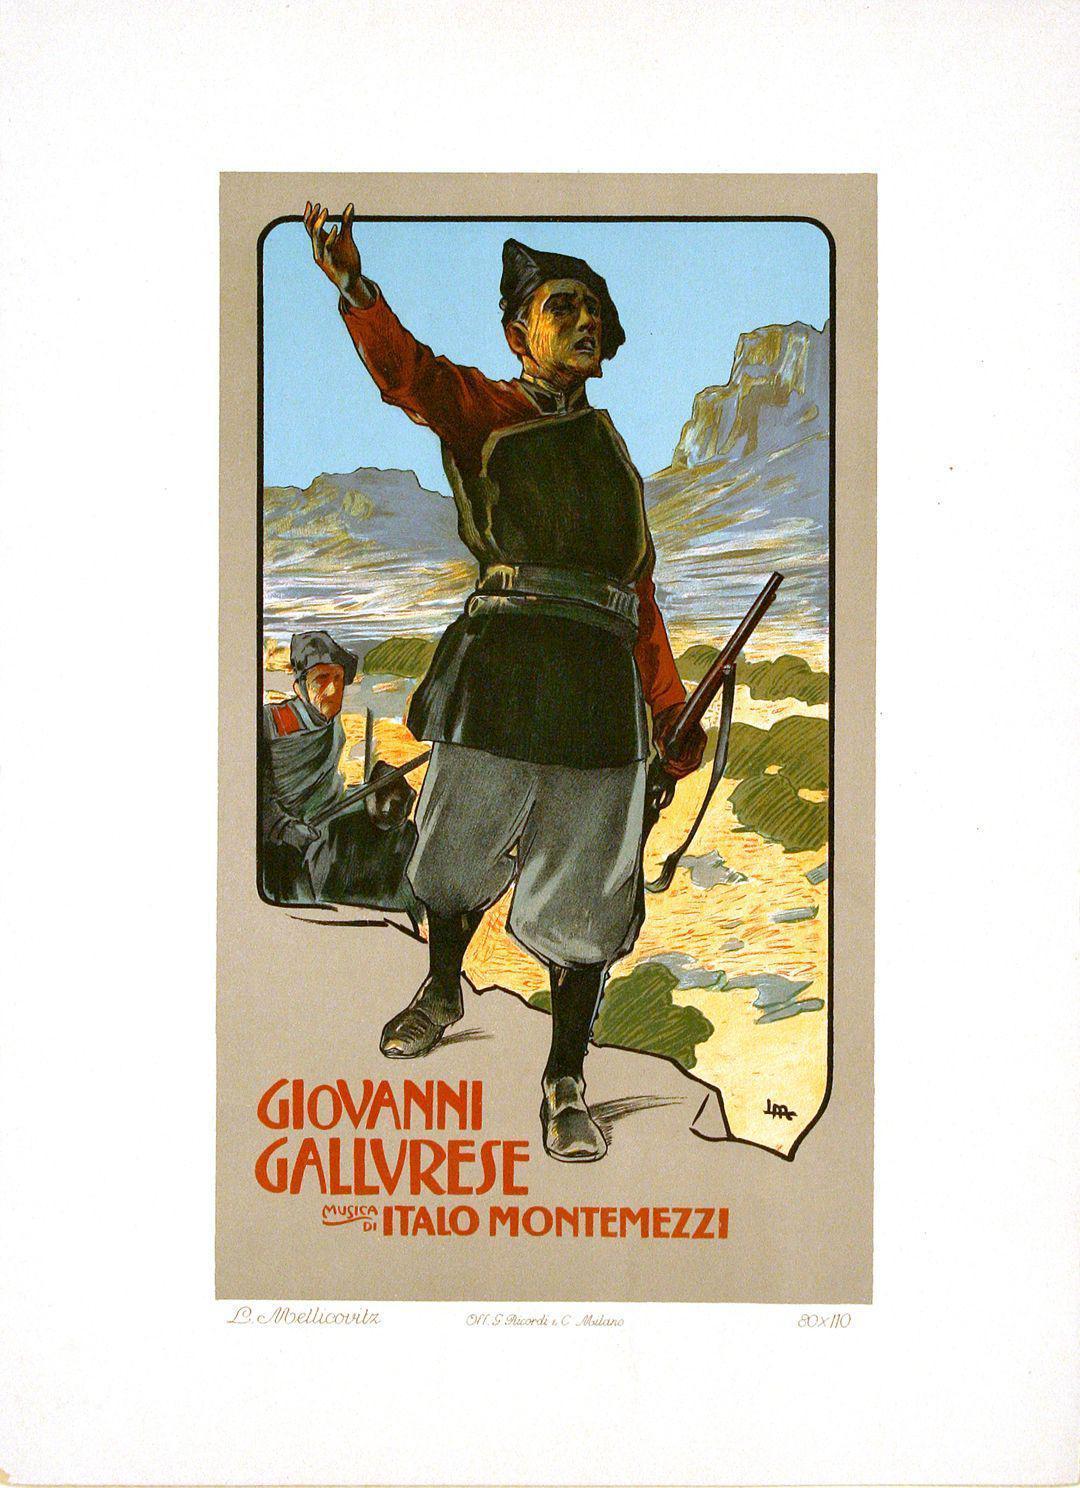 Original Poster by Metlicovitz for Ricordi 1914 Giovanni Gallvrese